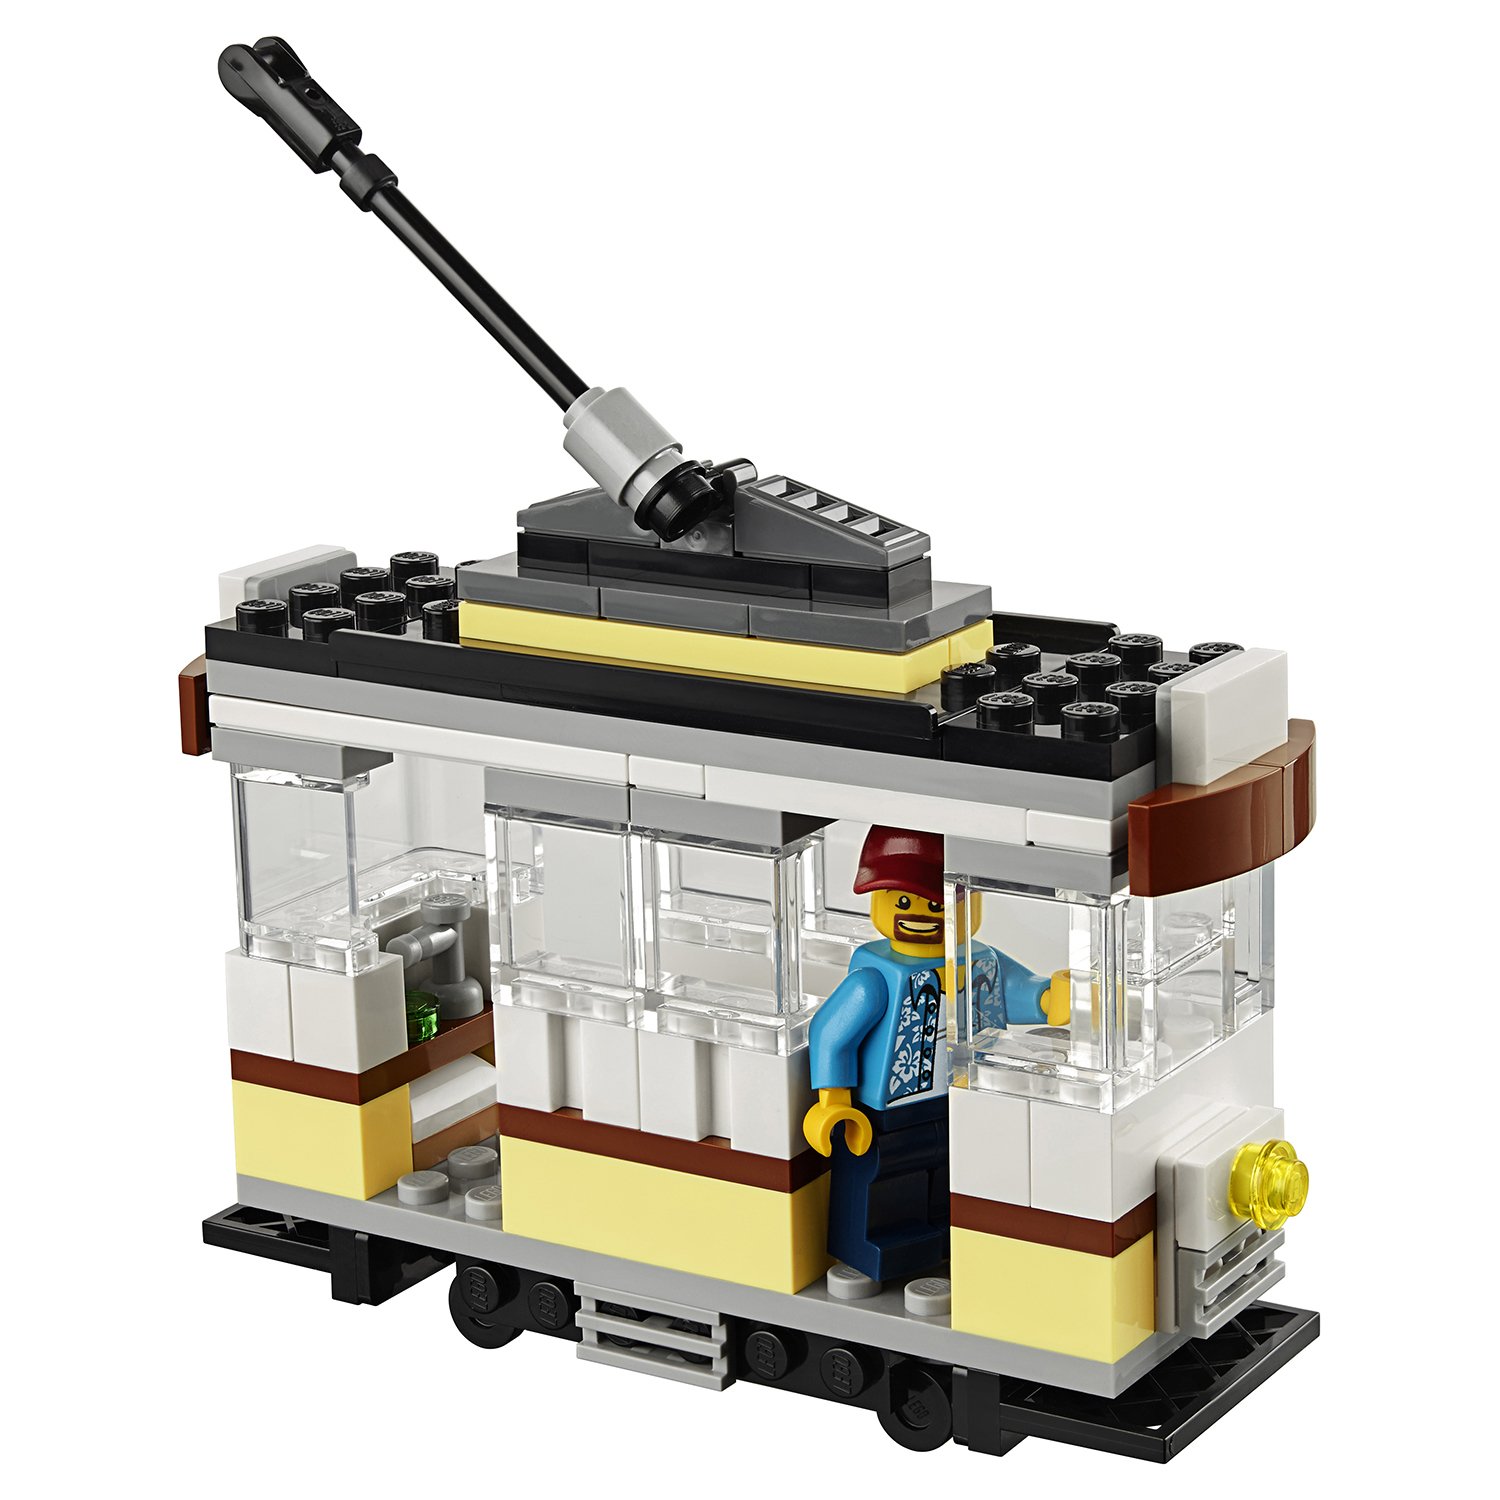 Конструктор Lego®  Криэйтор - Зоомагазин и кафе в центре города  